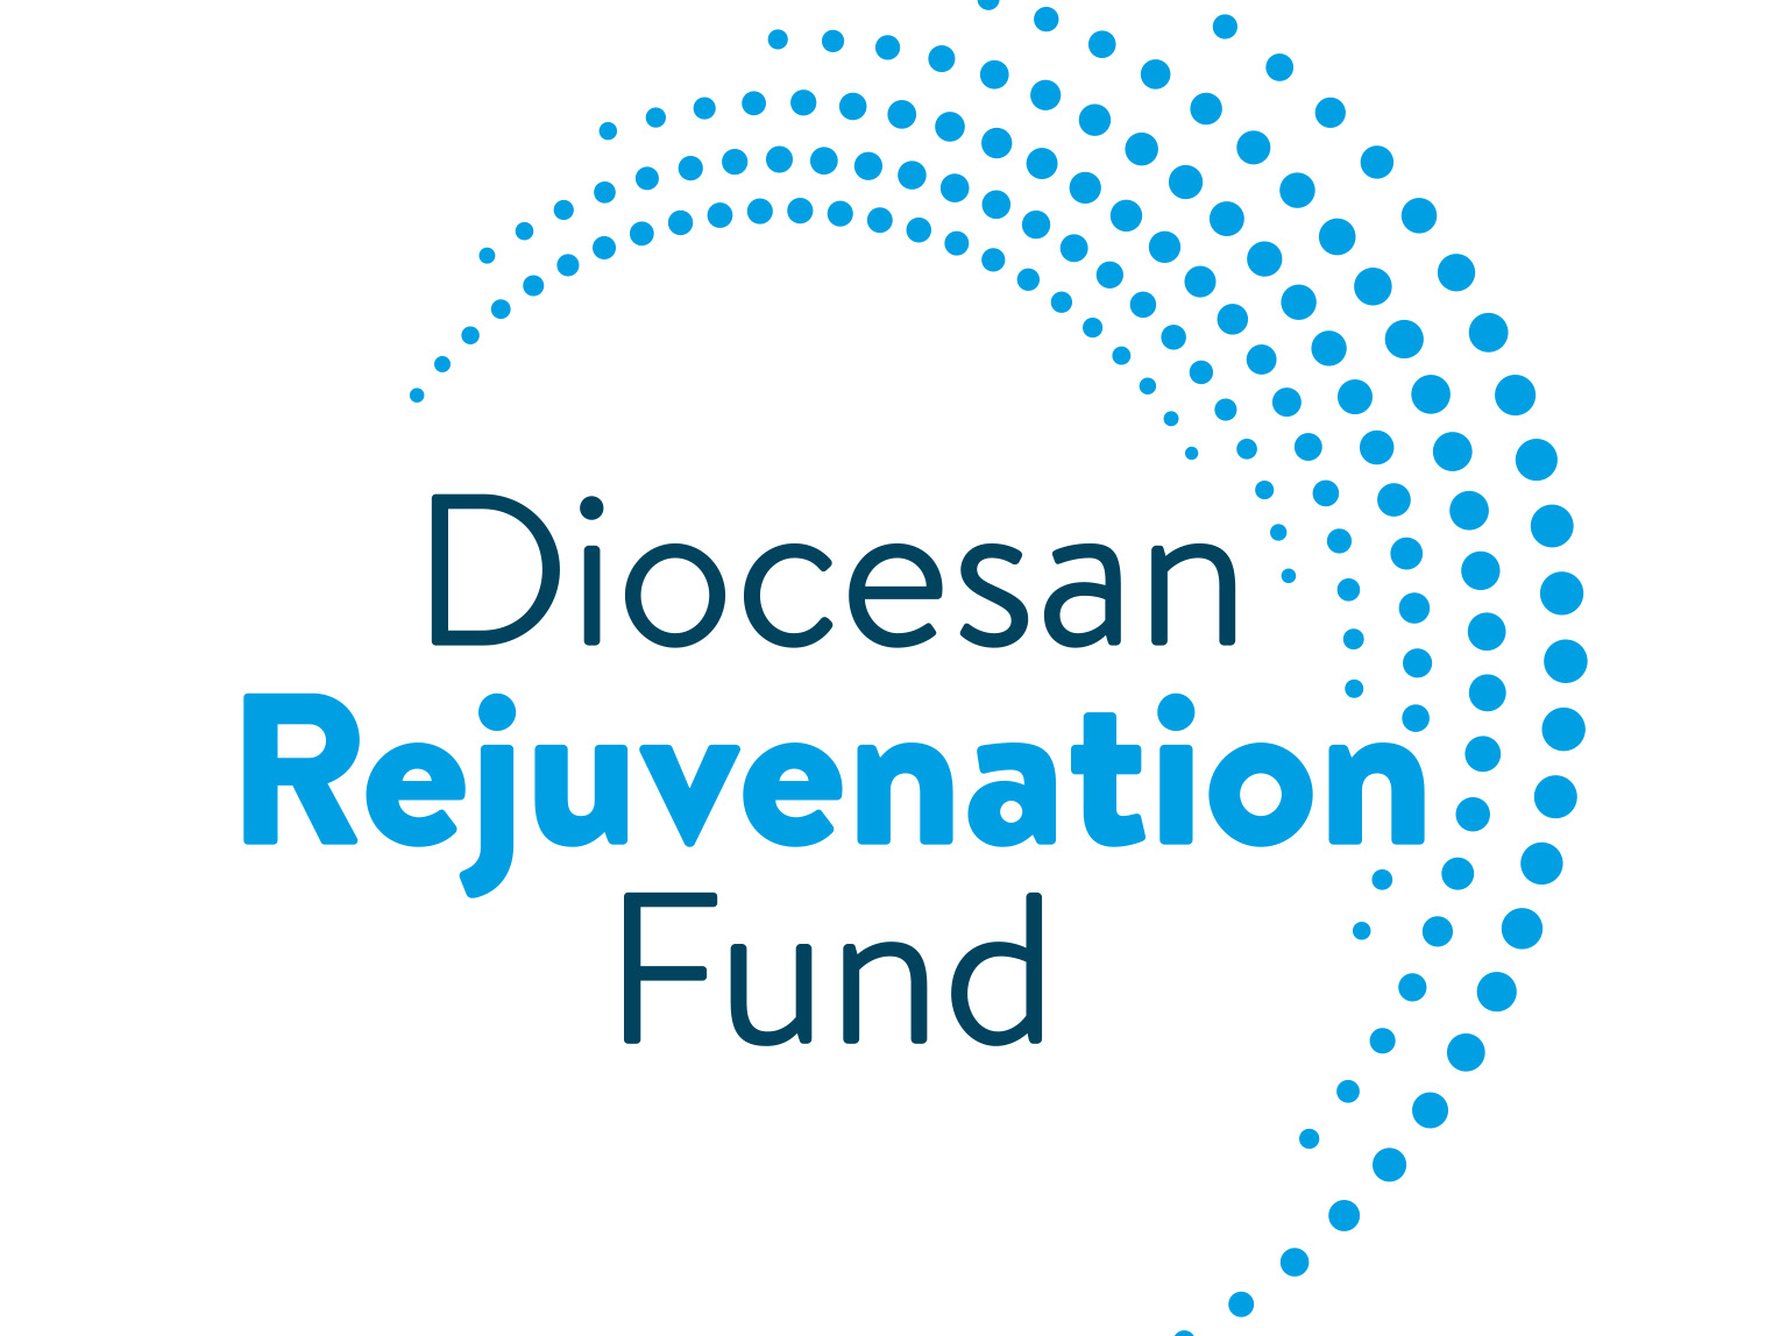 Diocesan Rejuvenation Fund